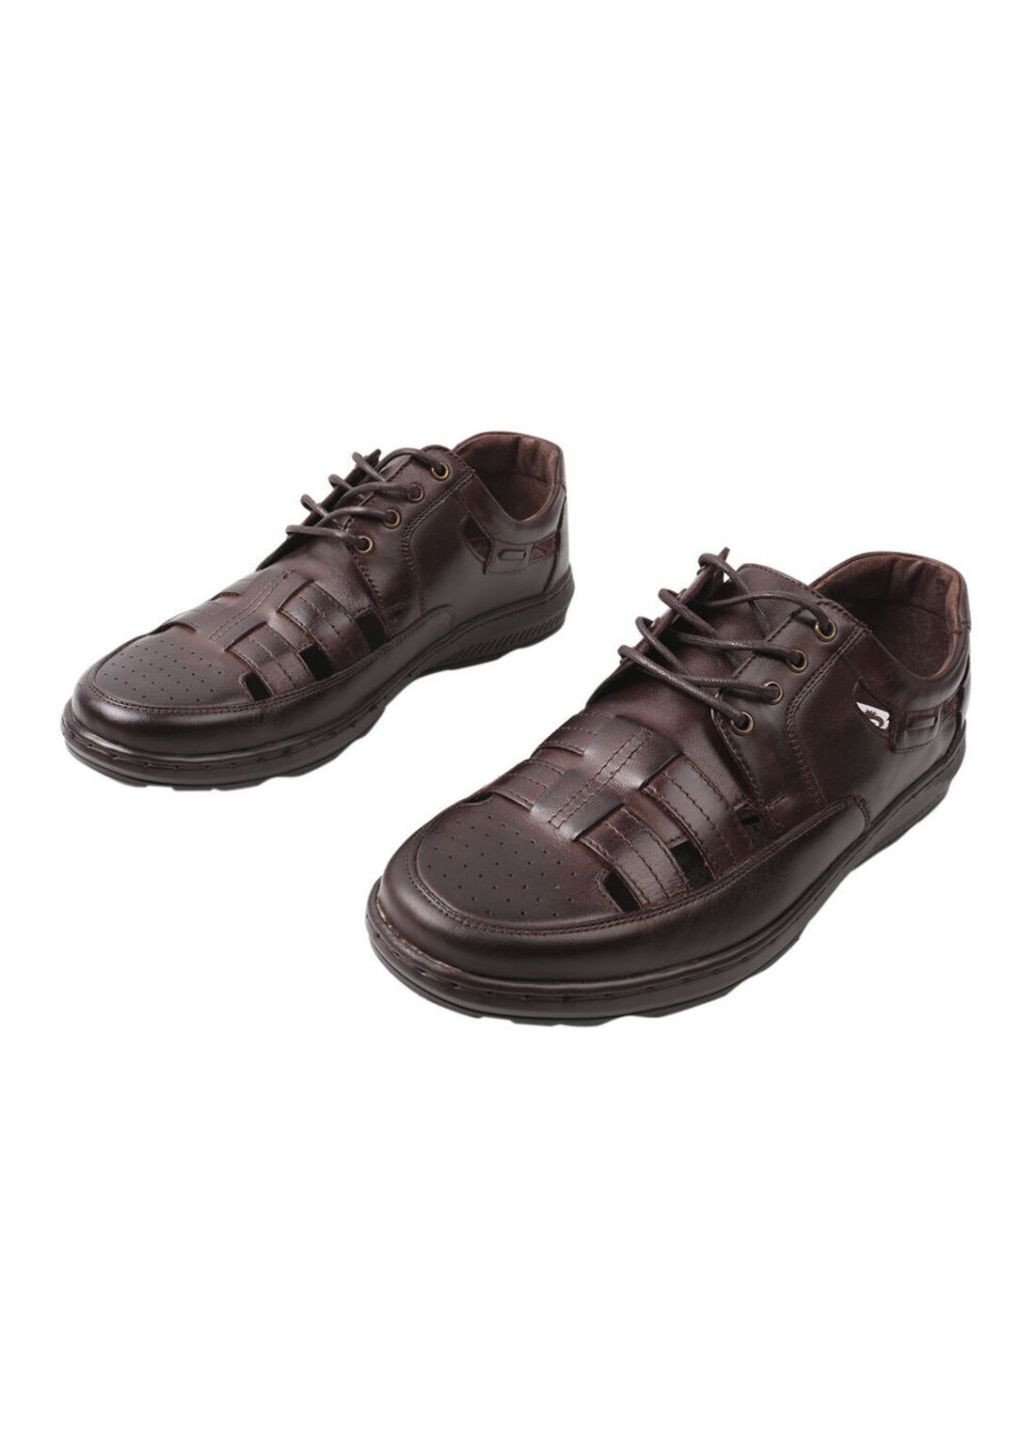 Коричневые туфли мужские из натуральной кожи, на низком ходу, на шнуровке, цвет кабир, Pan